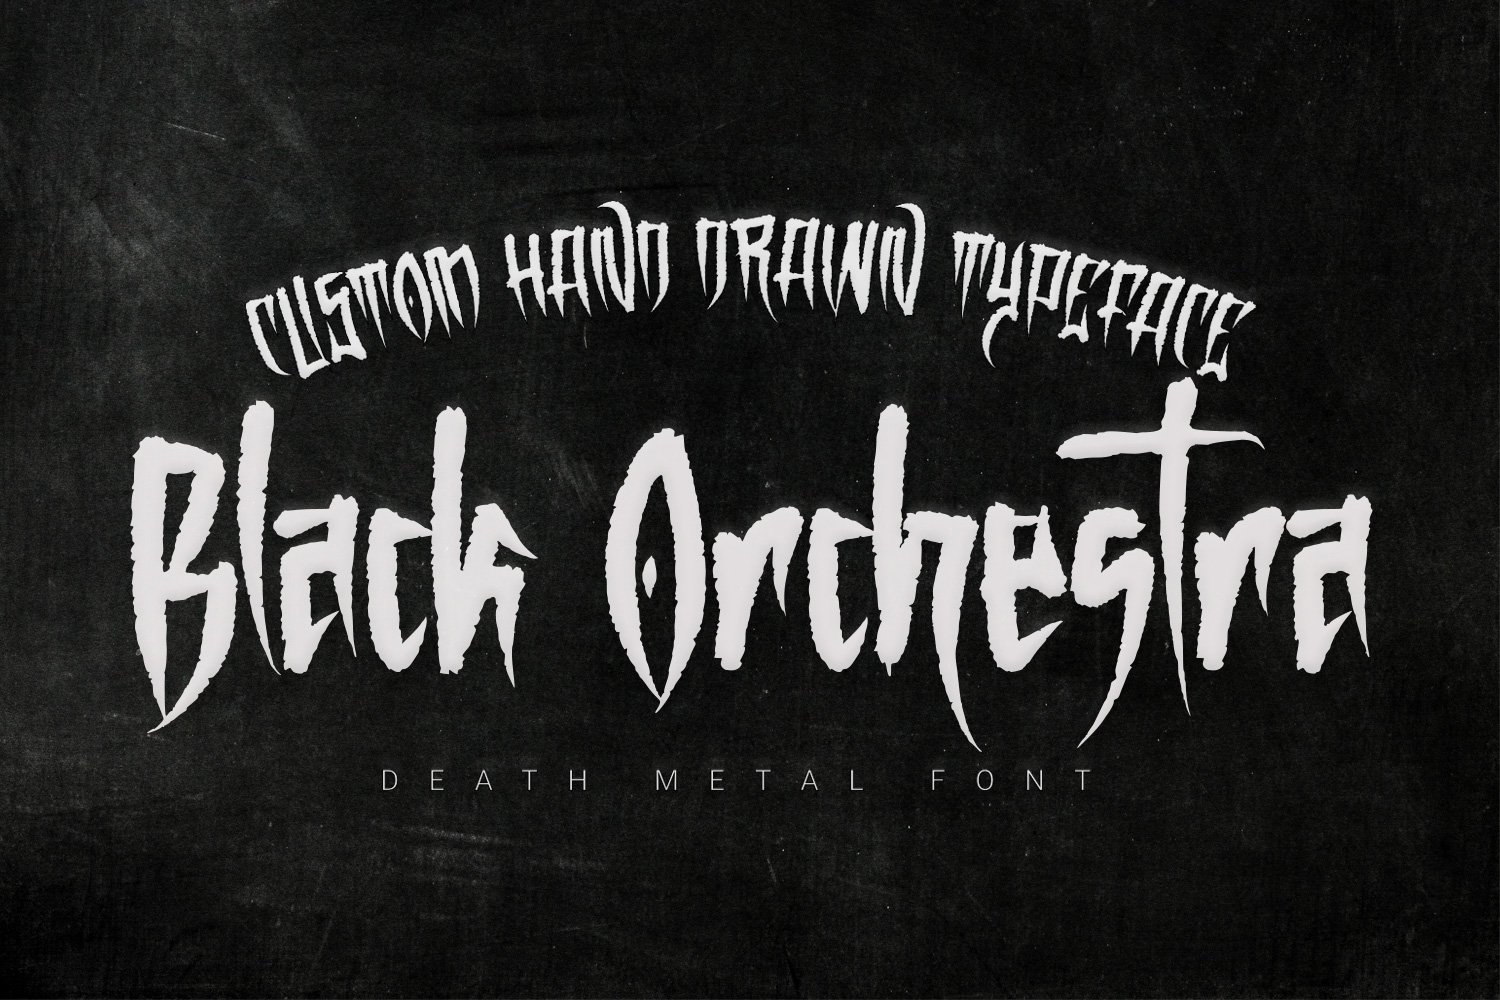 Black Orchestra - Blackletter font cover image.